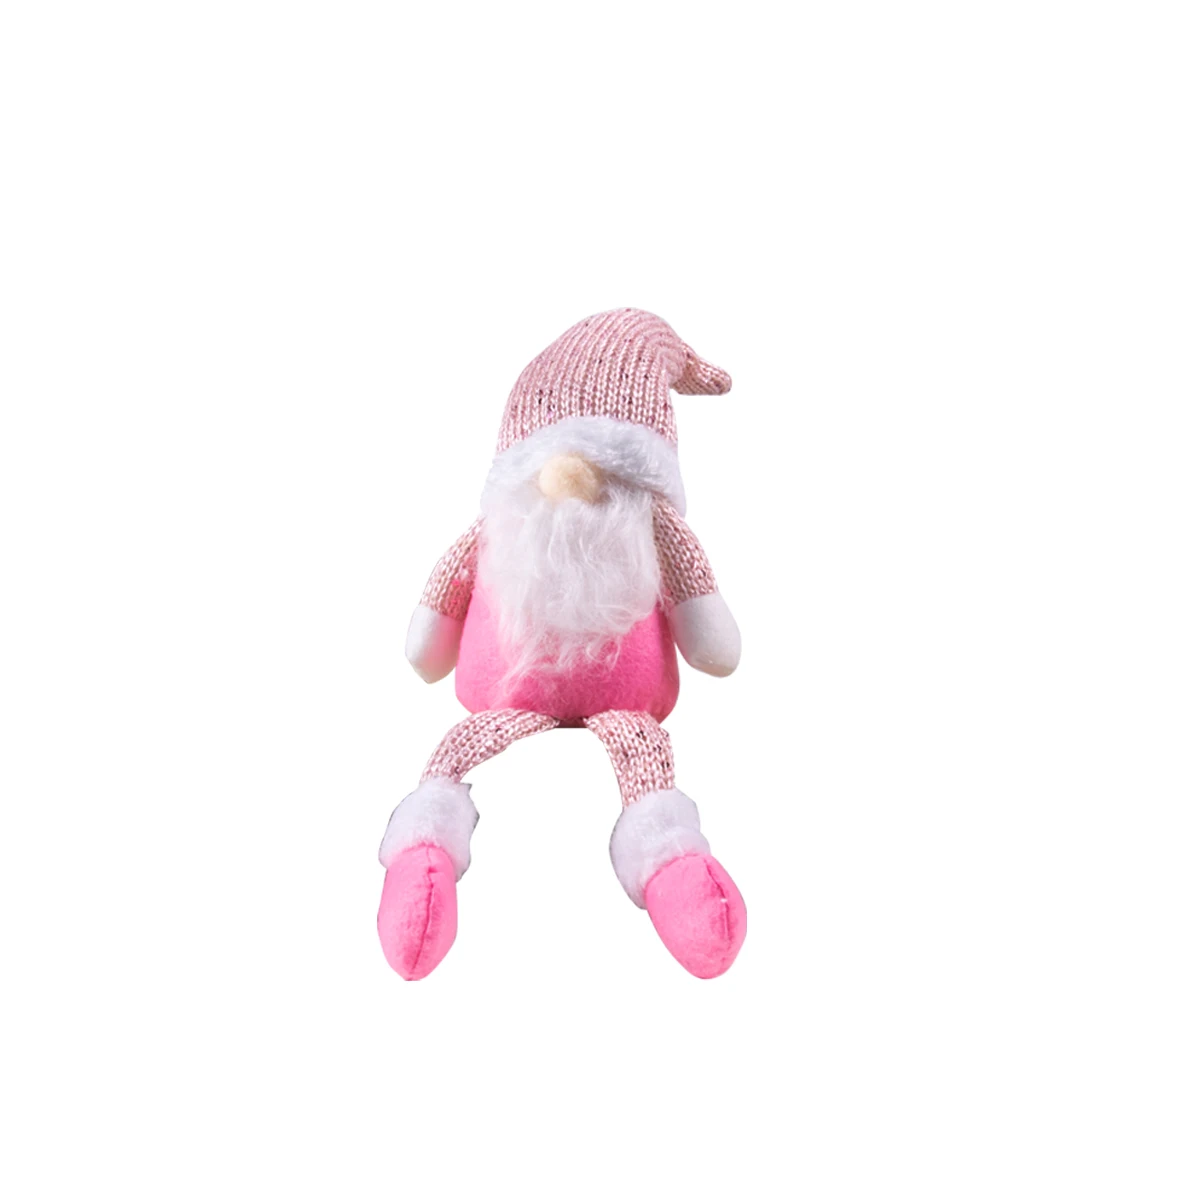 Куклы Gnome Christmas 2023 Розово-белая Безликая кукла С Рождеством Христовым Подарок Новогодние Рождественские украшения для дома Рождественский декор Noel